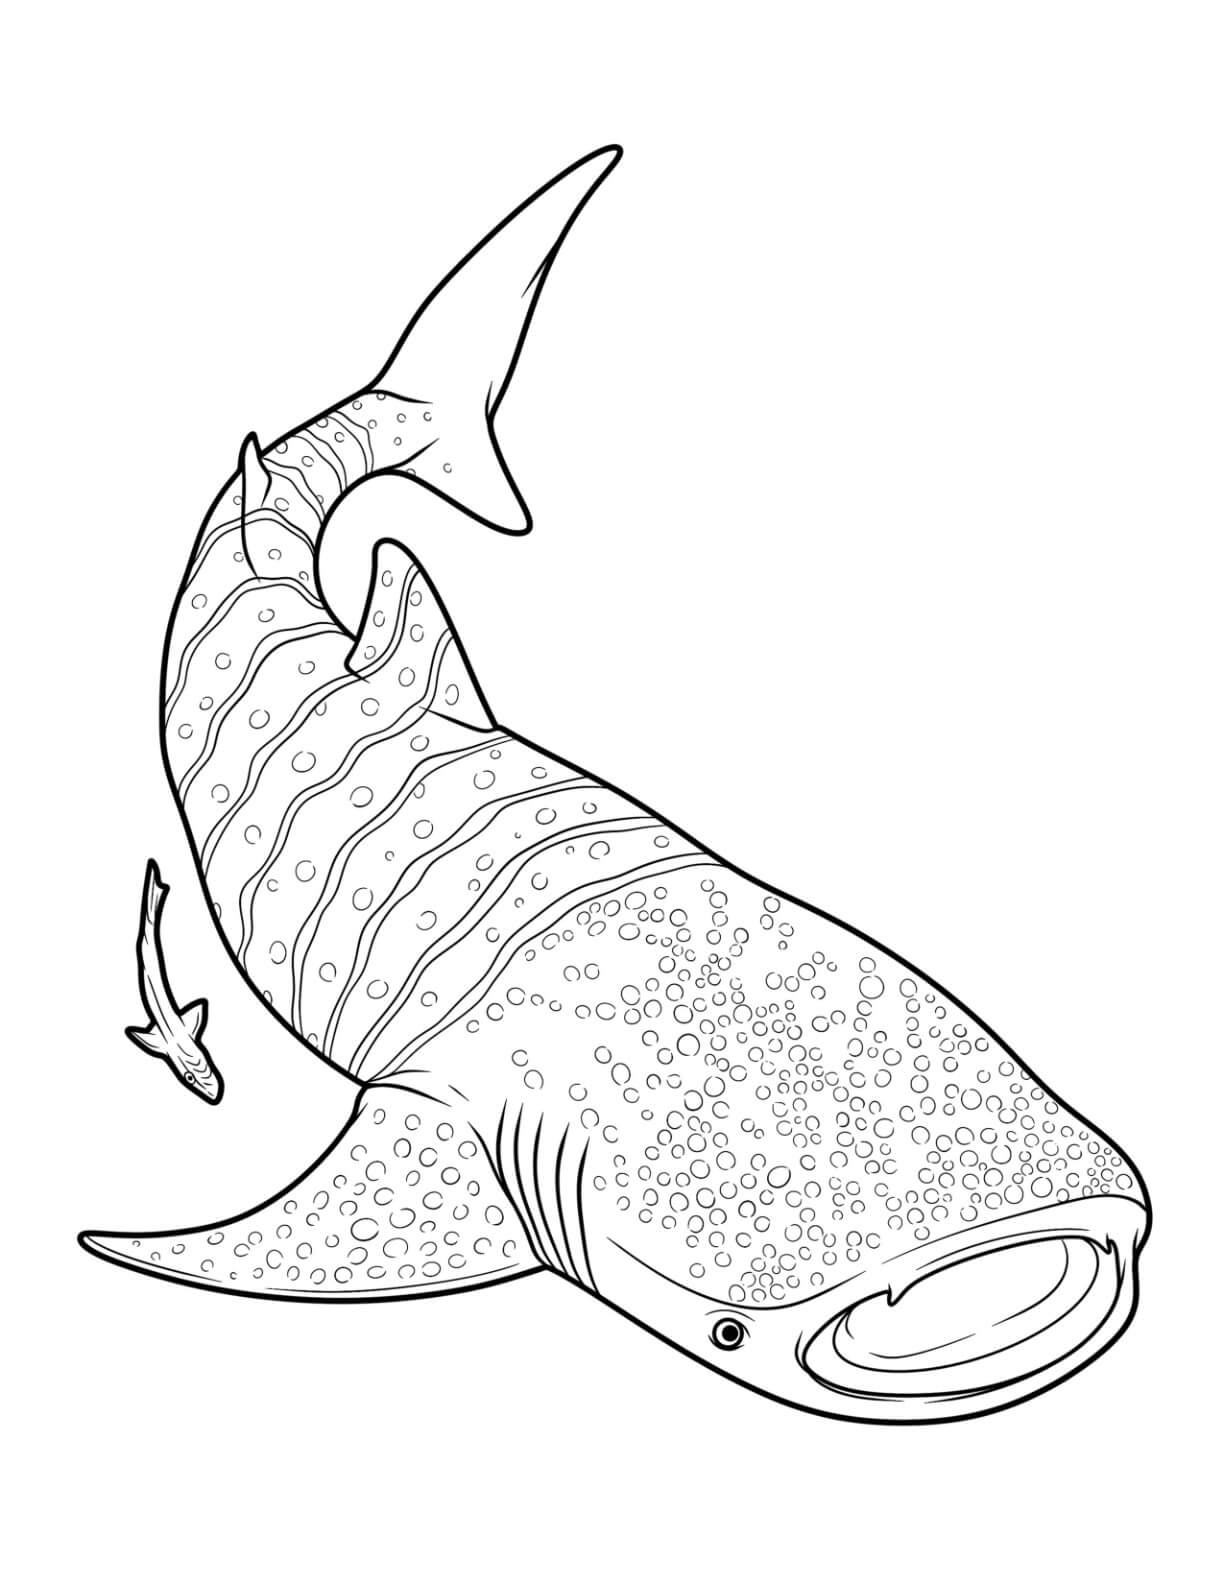 Mandala Shark Coloring Page - Sheet 4 Mandalas